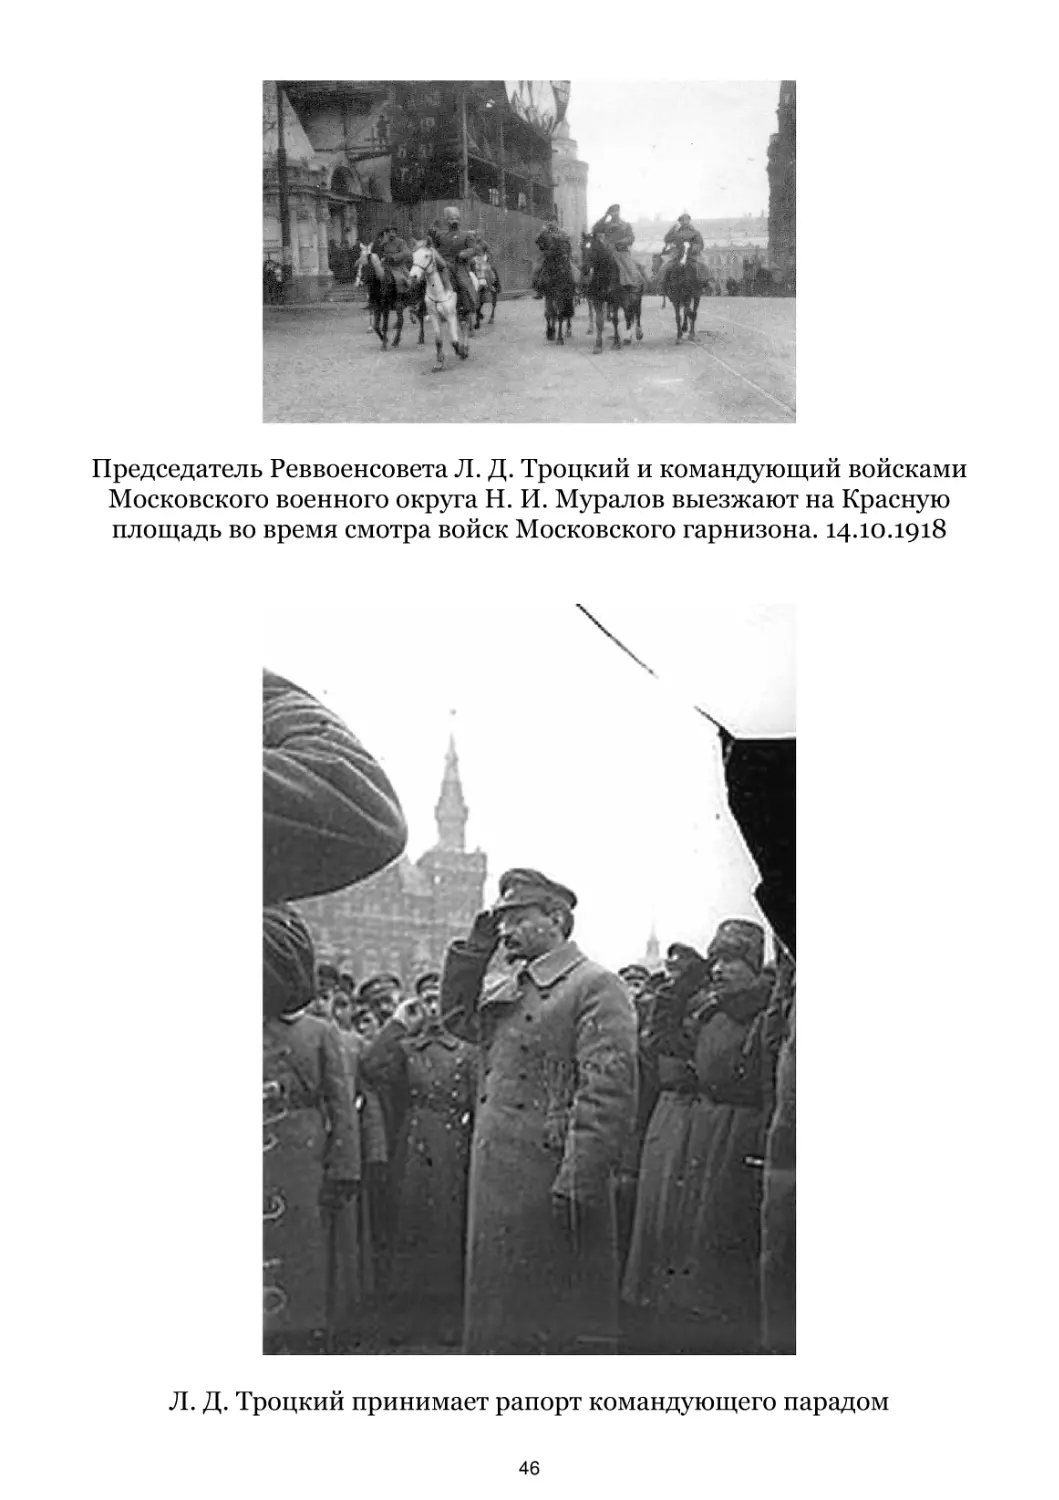 Л. Д. Троцкий и Н. И. Муралов выезжают на Красную площадь. 14.10.1918
Л. Д. Троцкий принимает рапорт командующего парадом